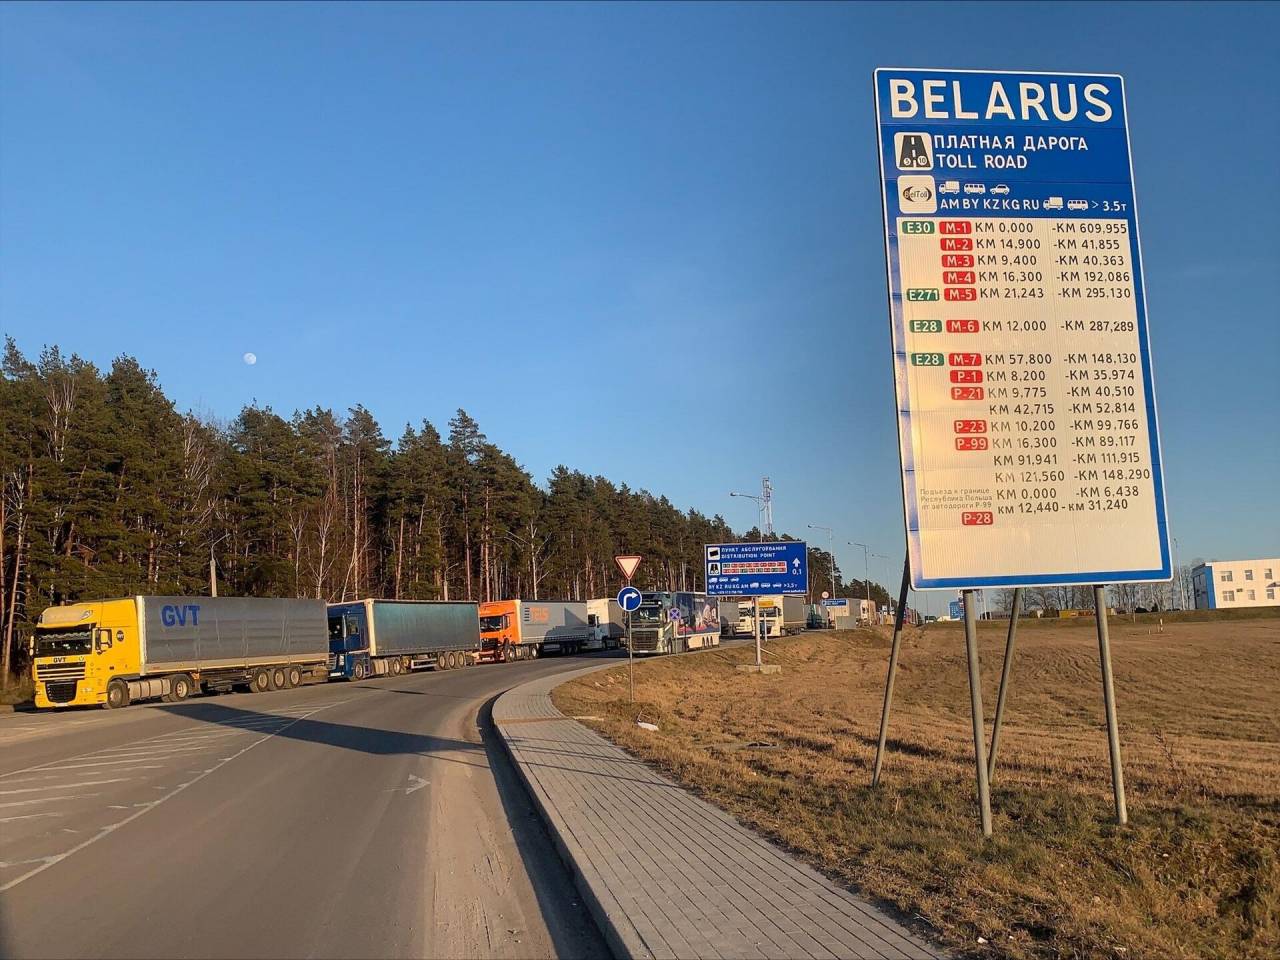 Гайд для белорусов с визой: как теперь проезжать границу в сторону Польши